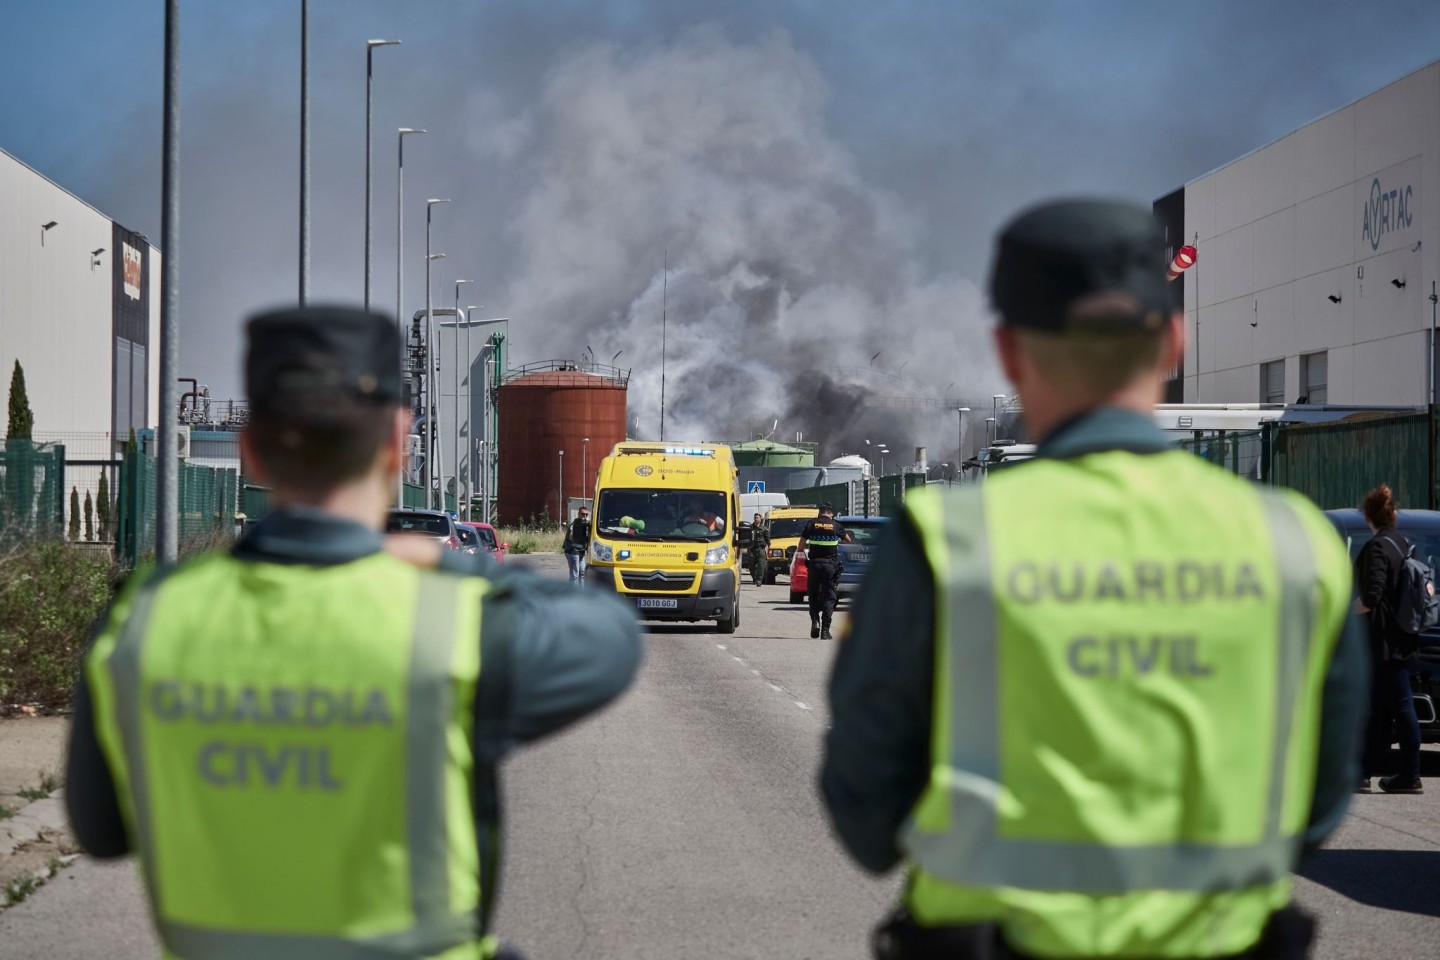 Beamte der Guardia Civil sind in der Nähe einer Biodiesel-Fabrik nach einer Explosion im Einsatz.